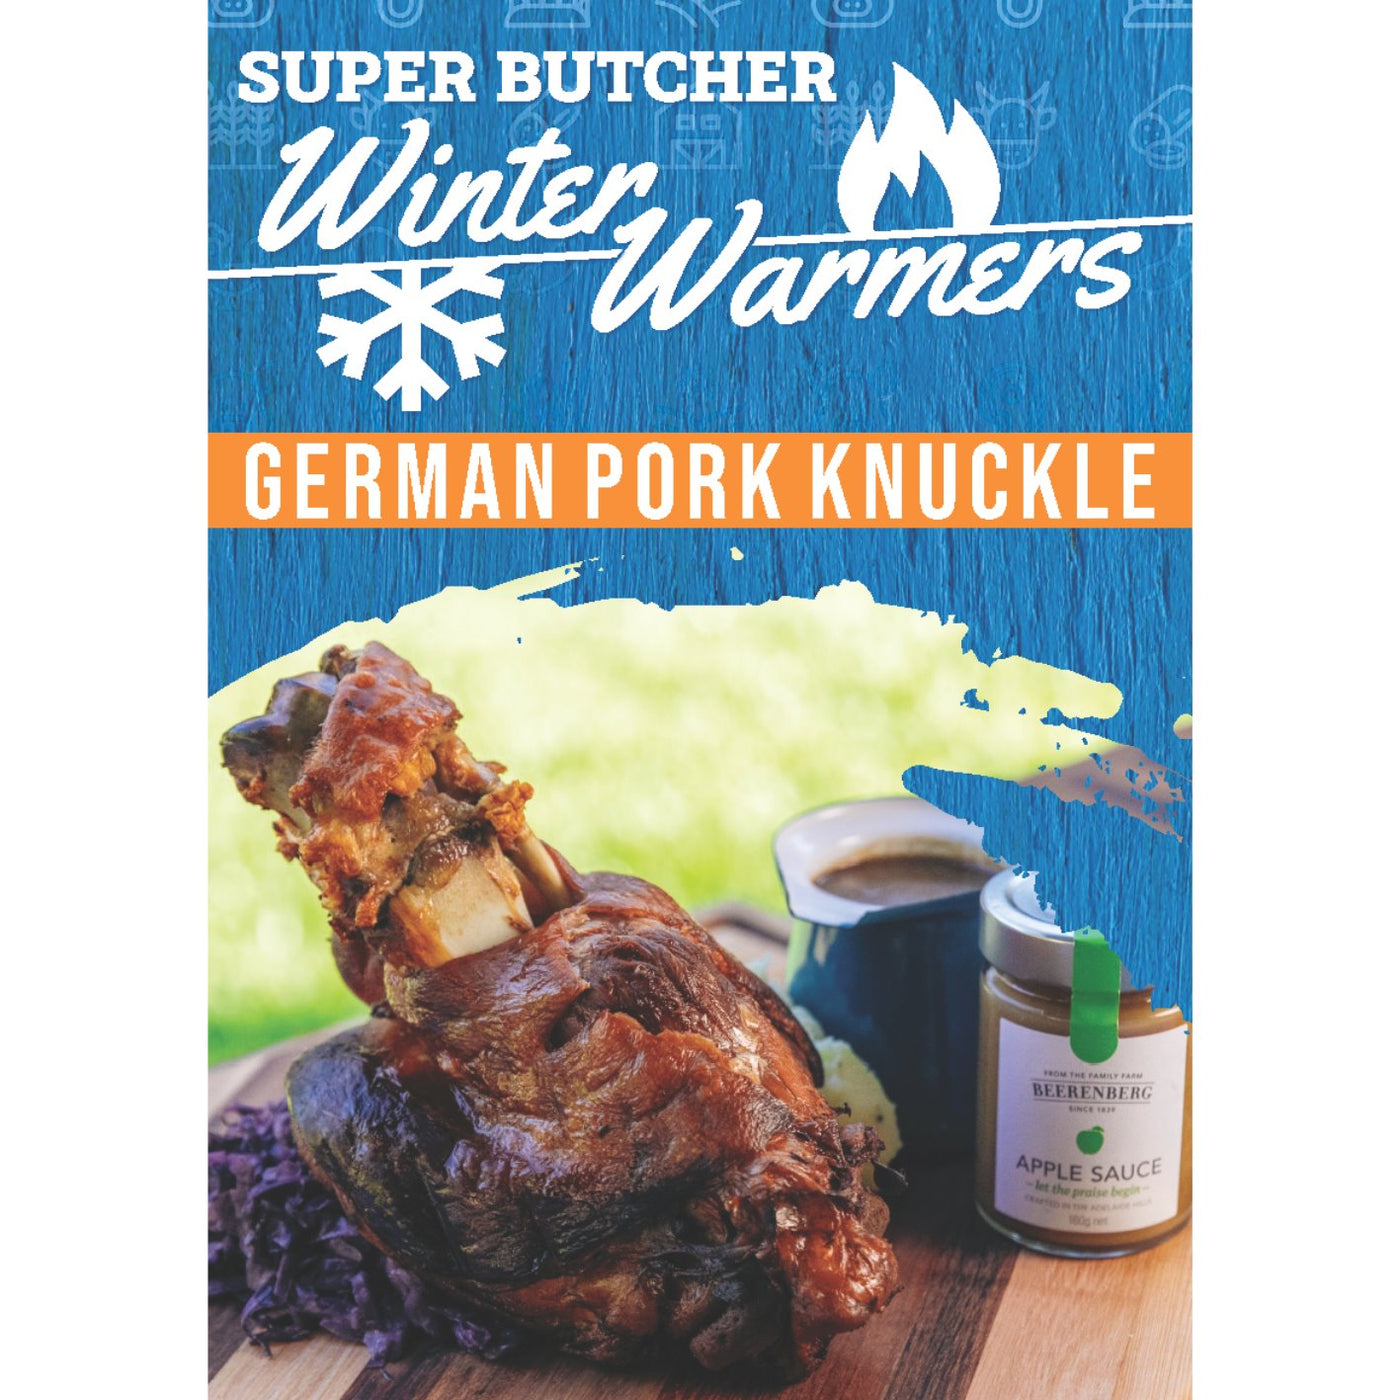 German Pork Knuckle Recipe Card